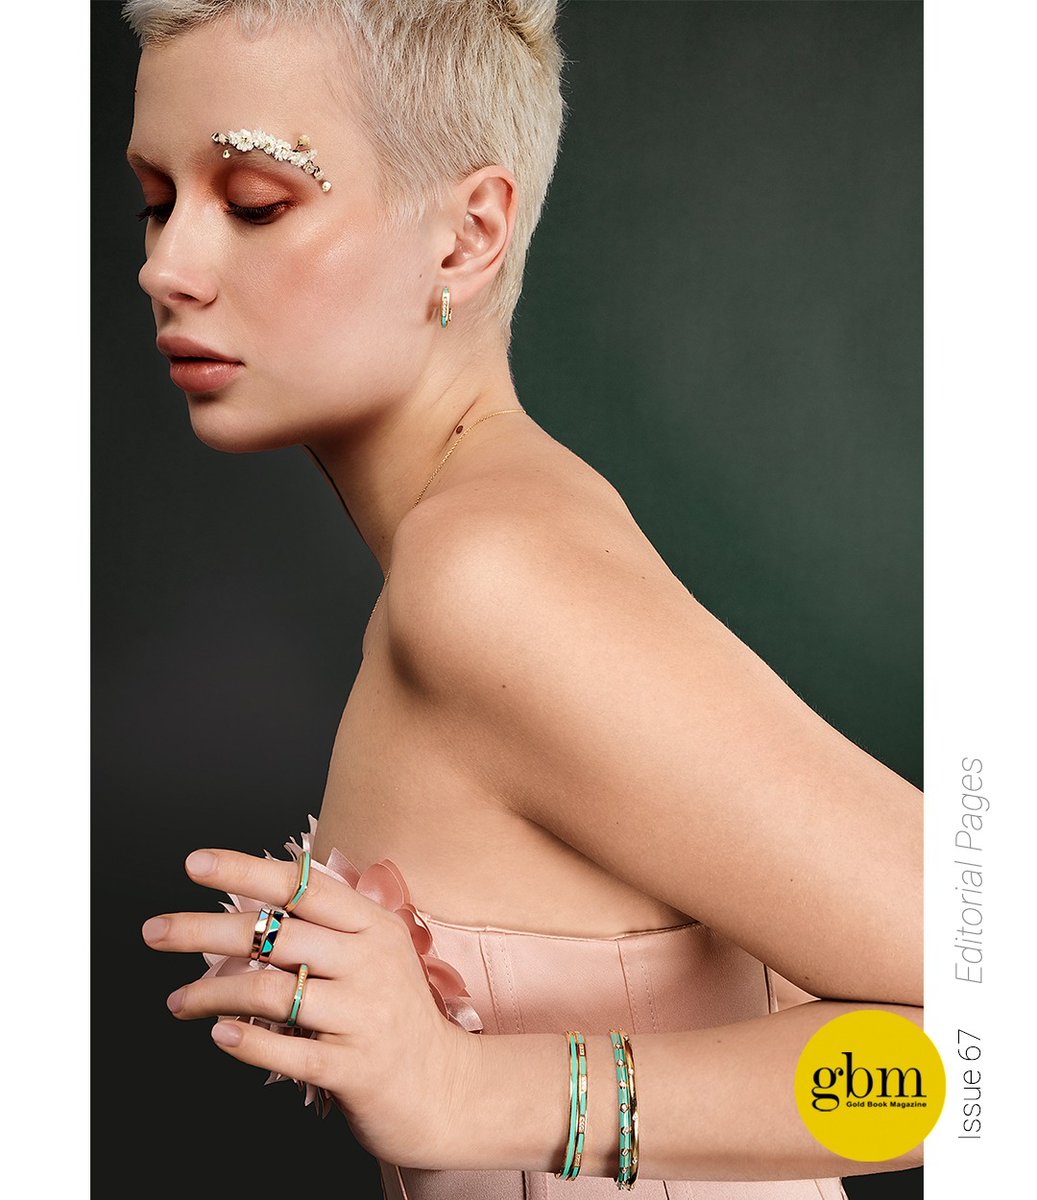 #GoldBookMagazine #editorialshoot #image #consept #style
#jewelleryshoot #fashionshoot #67thissue #IstanbulJewelryShow
#uzmanjewelry #enameljewelry #jewelrystyle